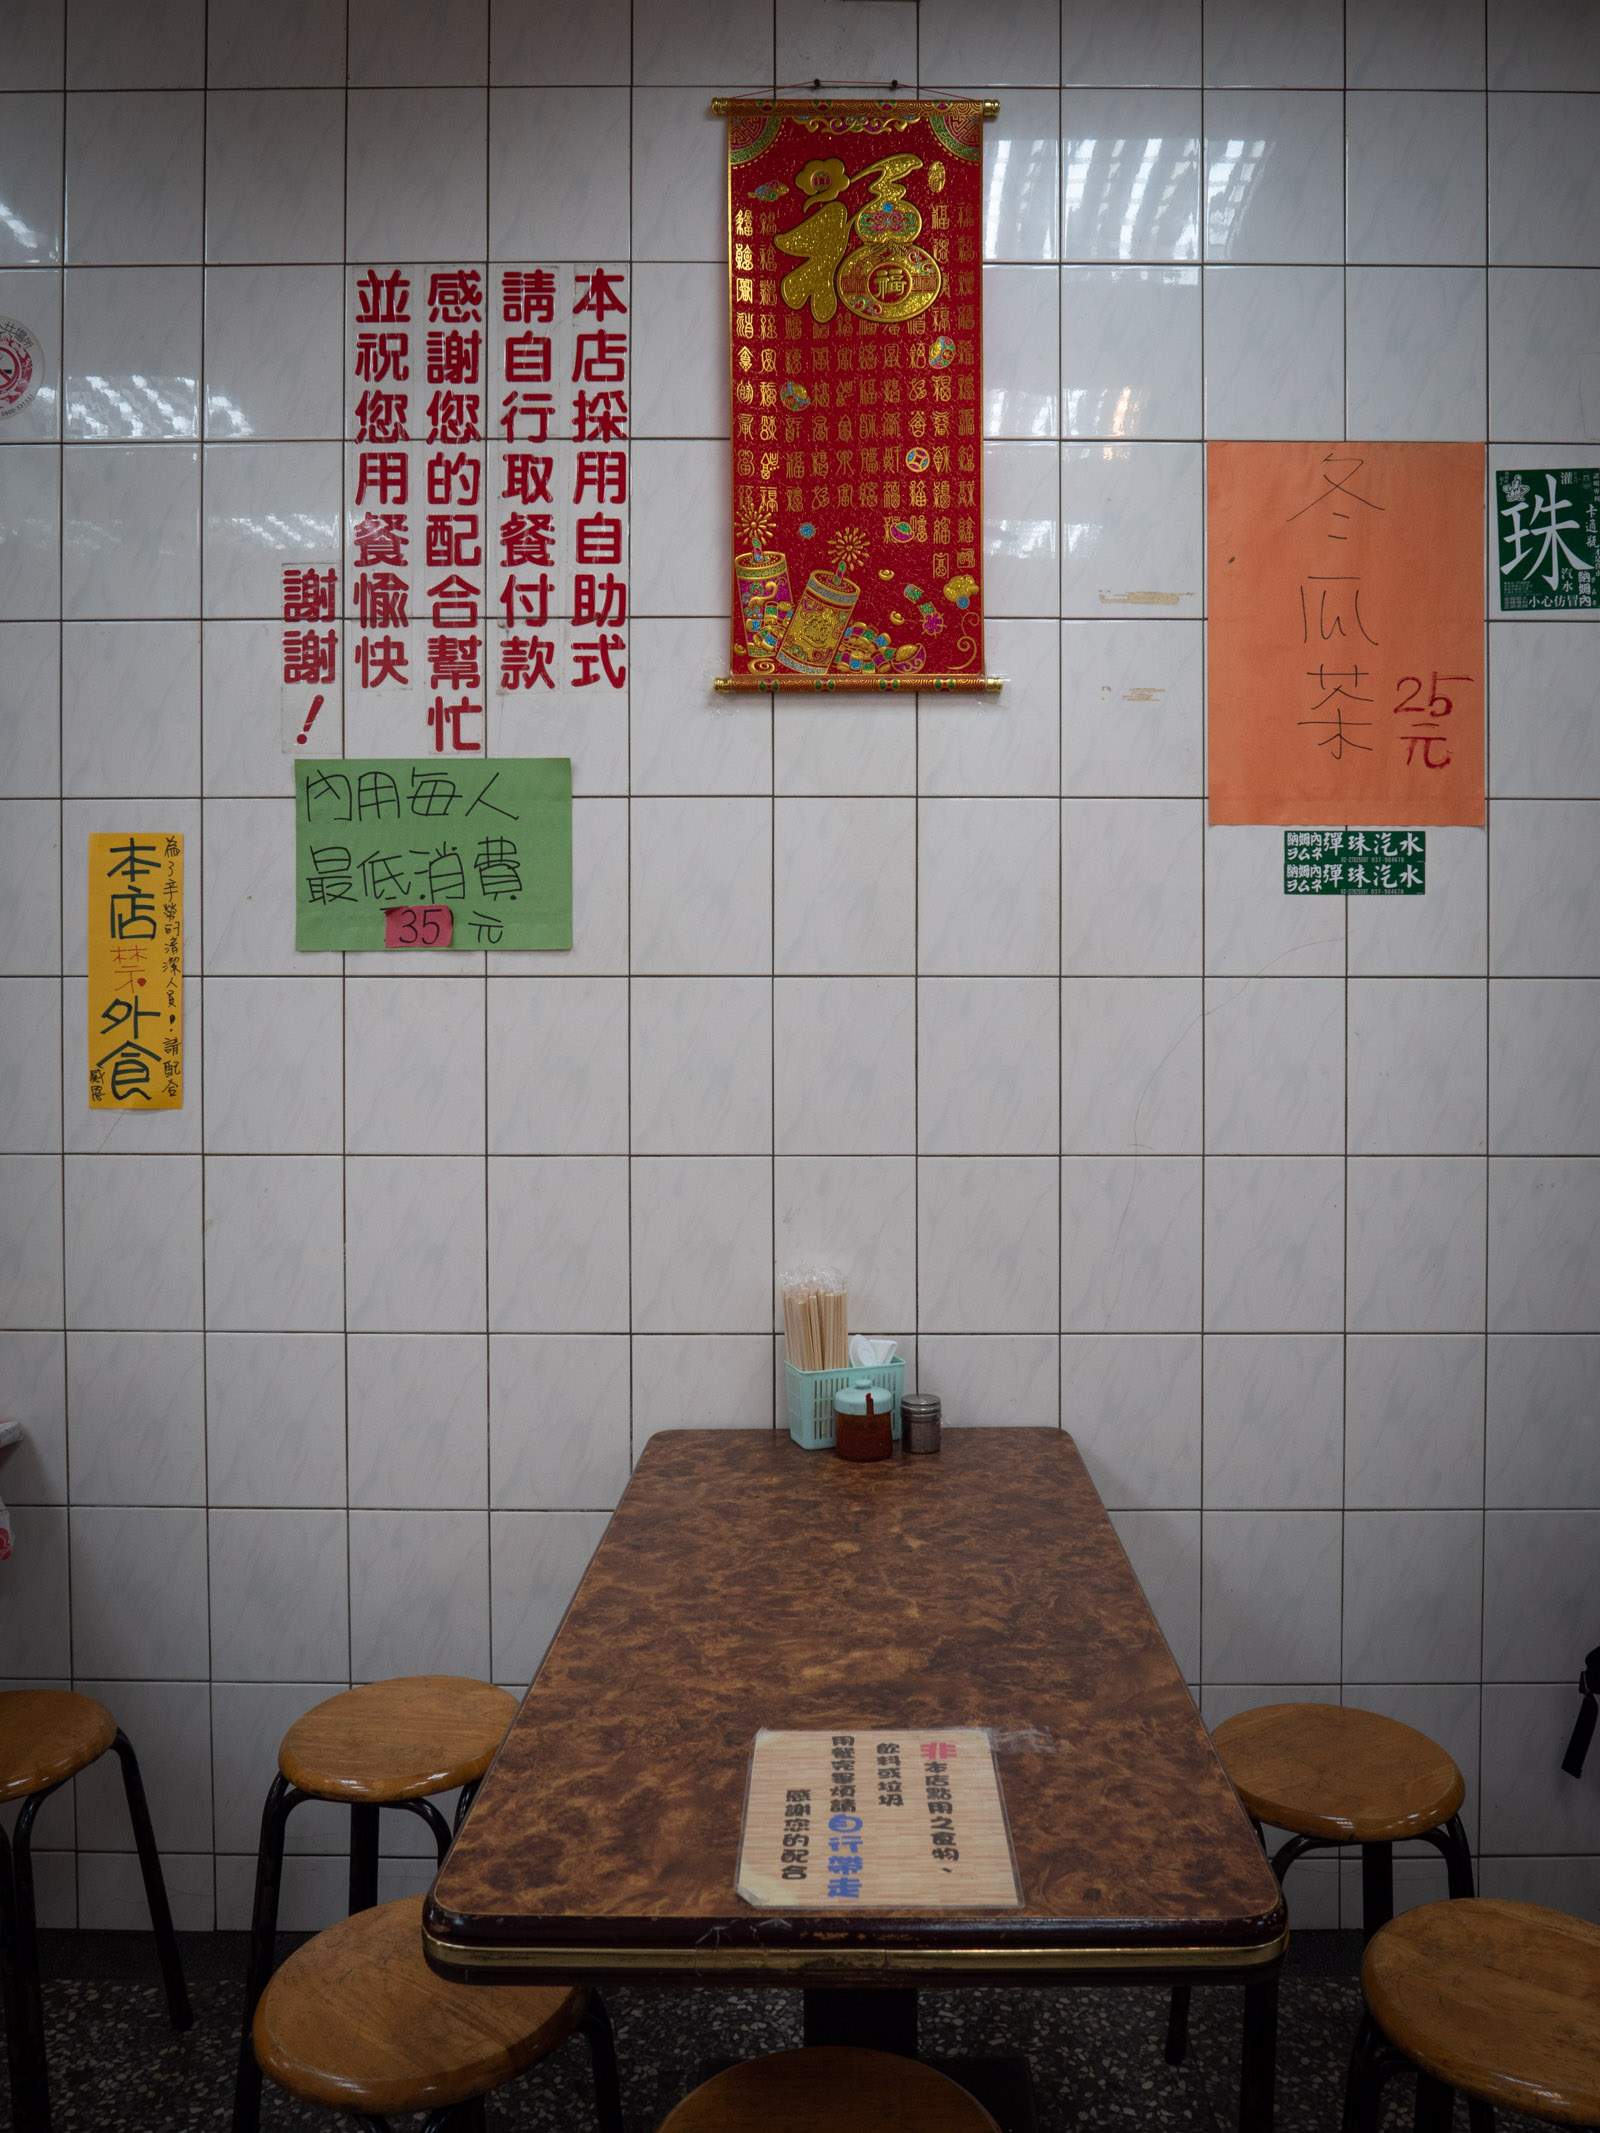 淡水「阿給魚丸湯」店内のテーブルと壁